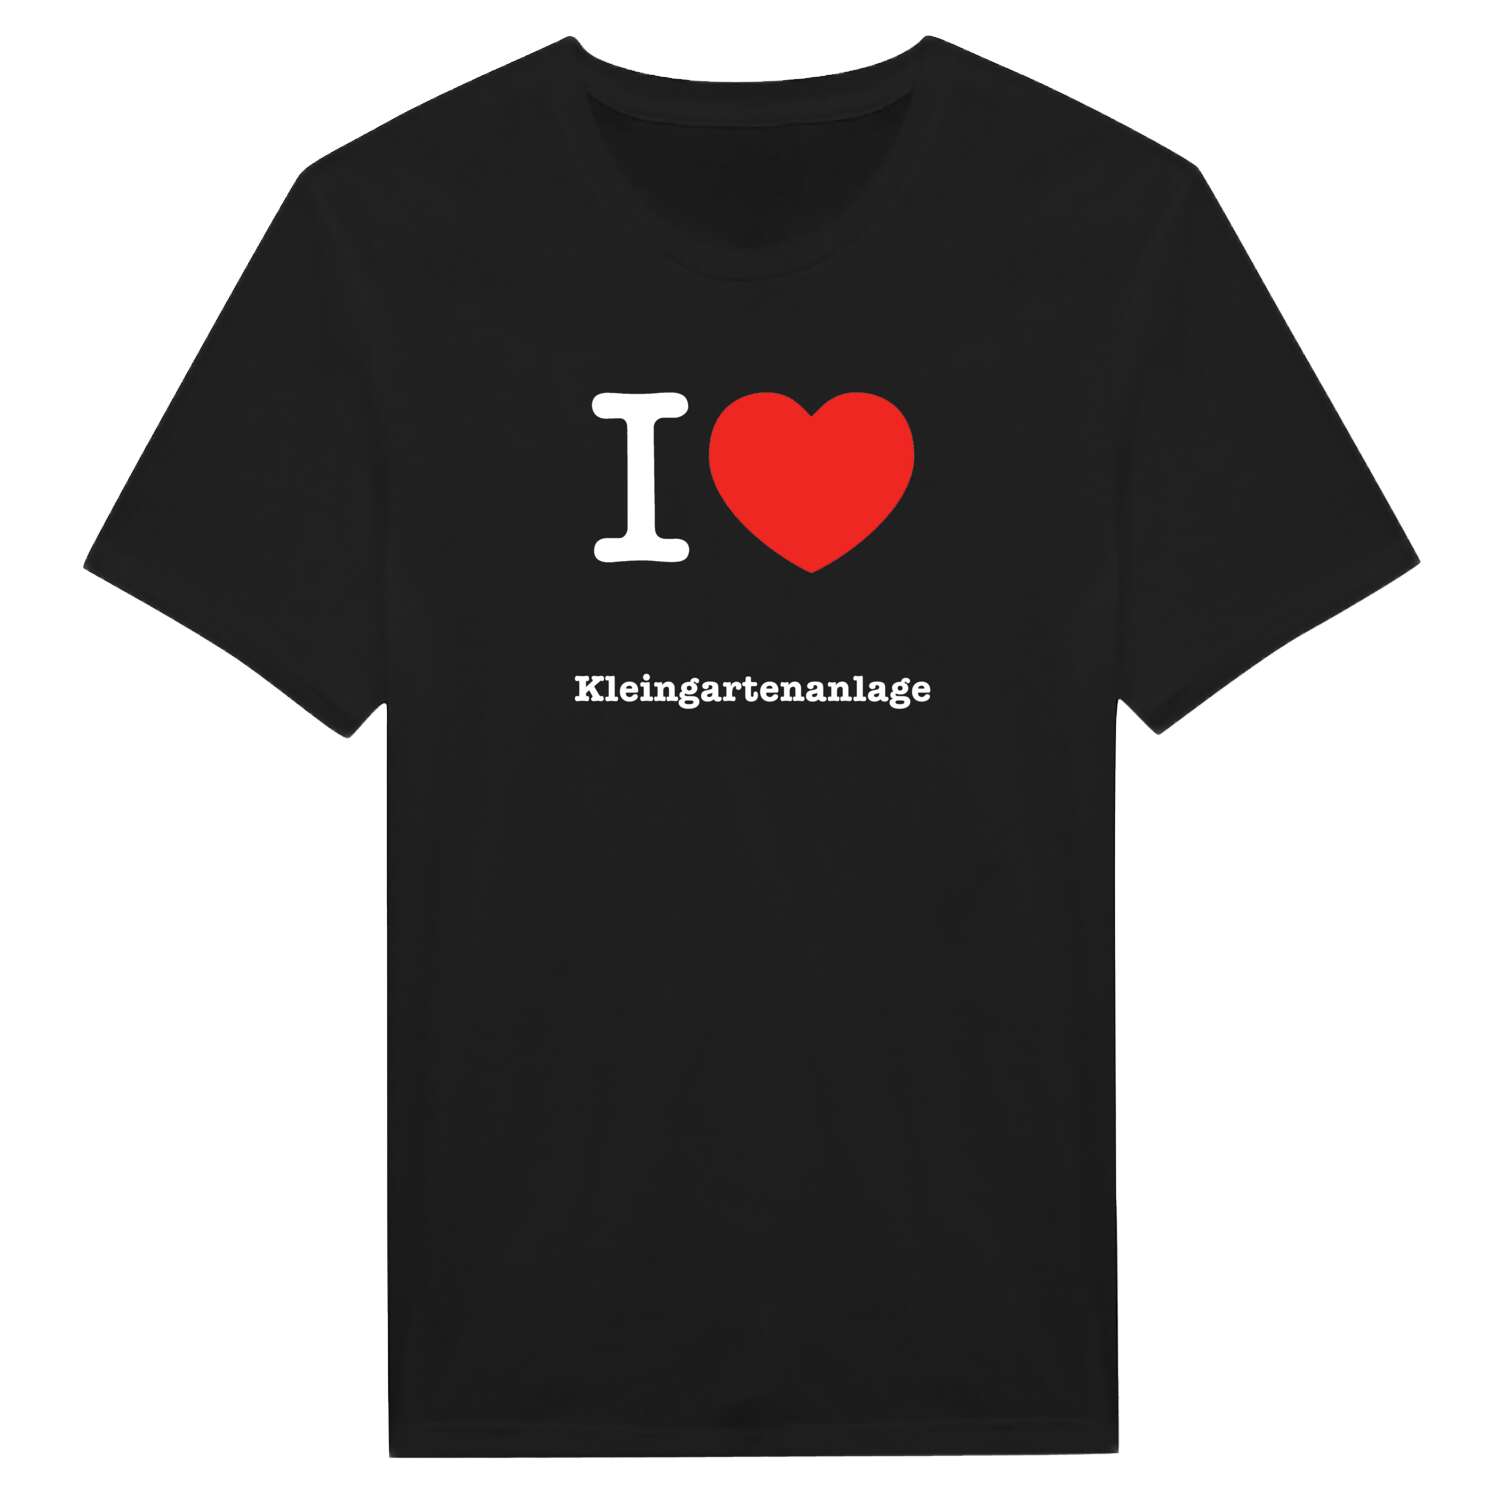 Kleingartenanlage T-Shirt »I love«